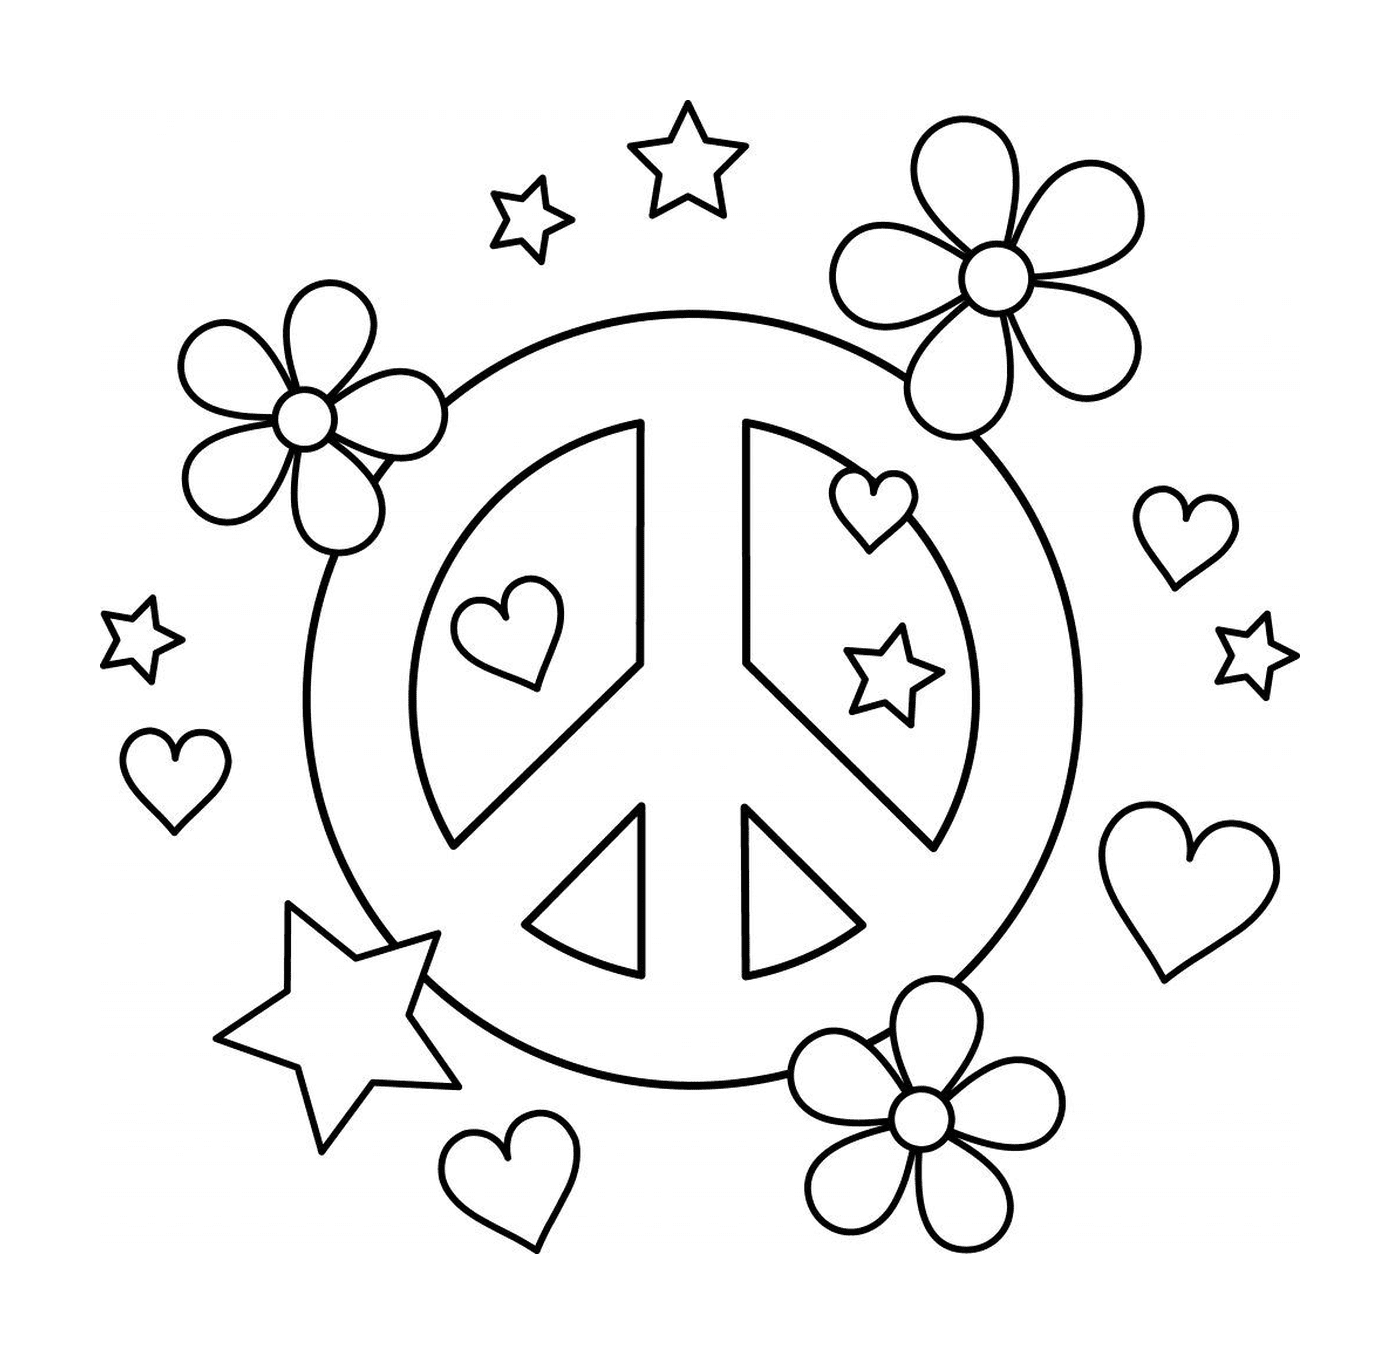  Símbolo da paz com corações e flores 